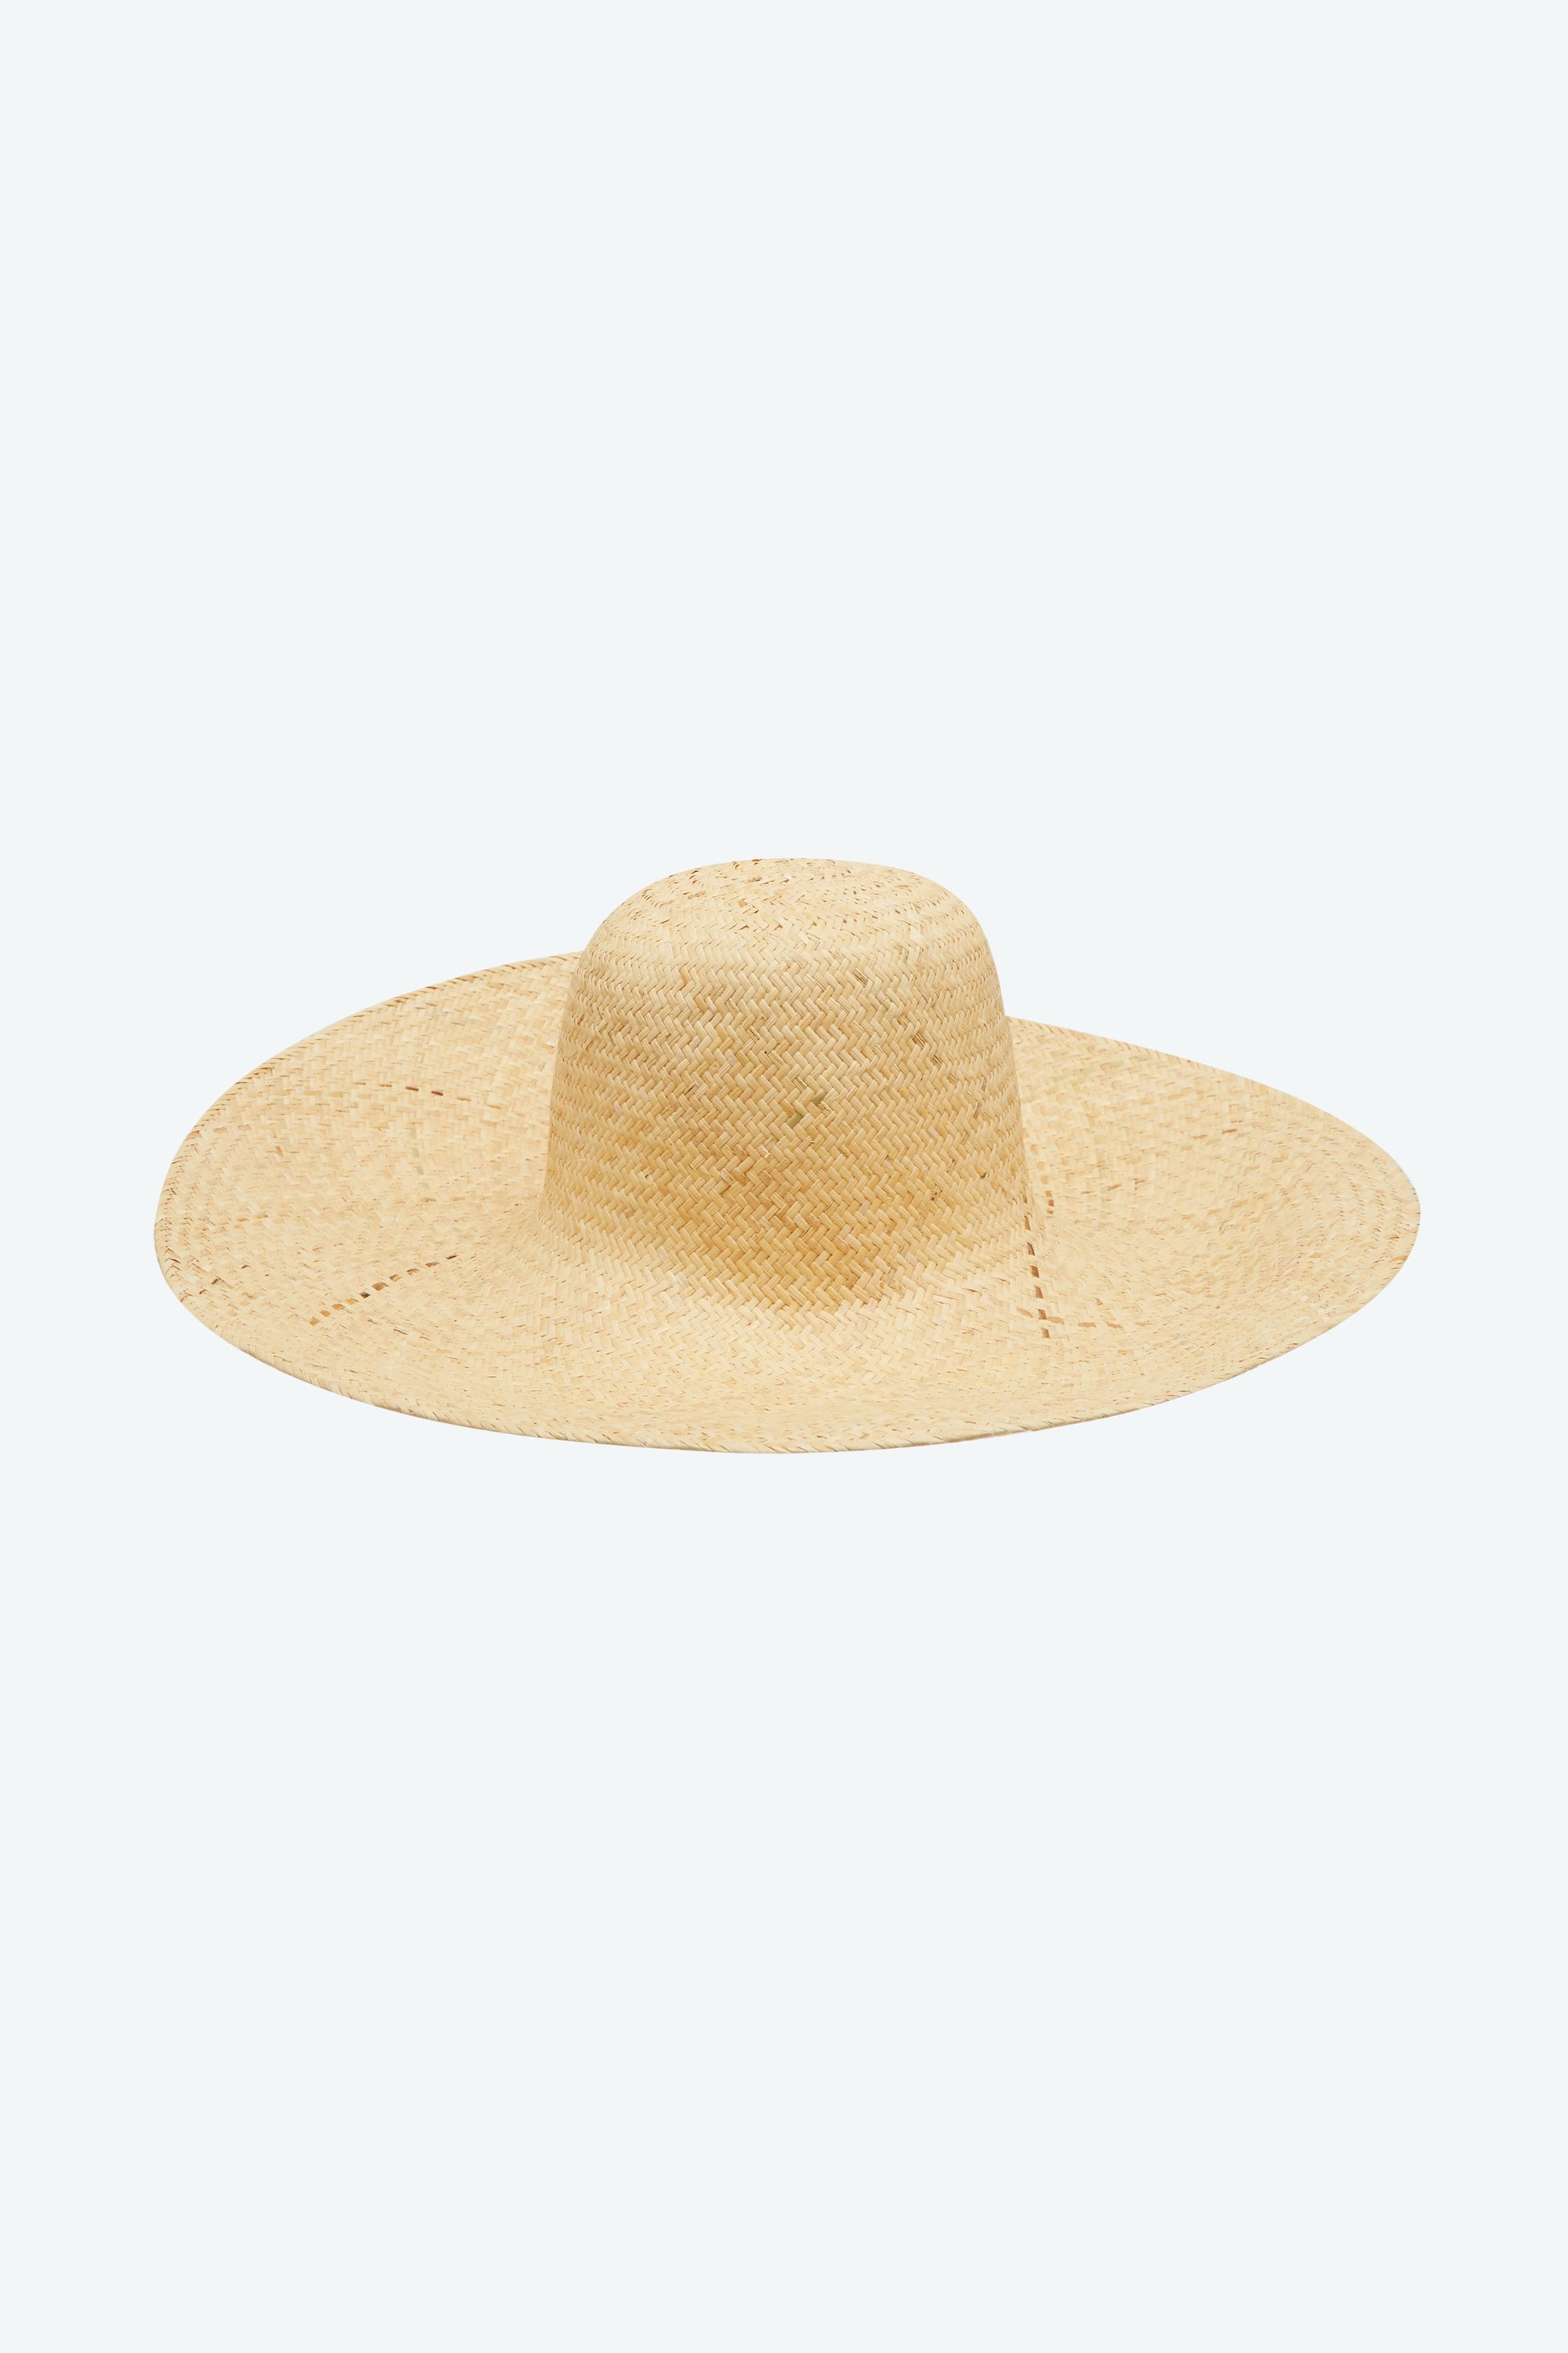 The Garden Hat